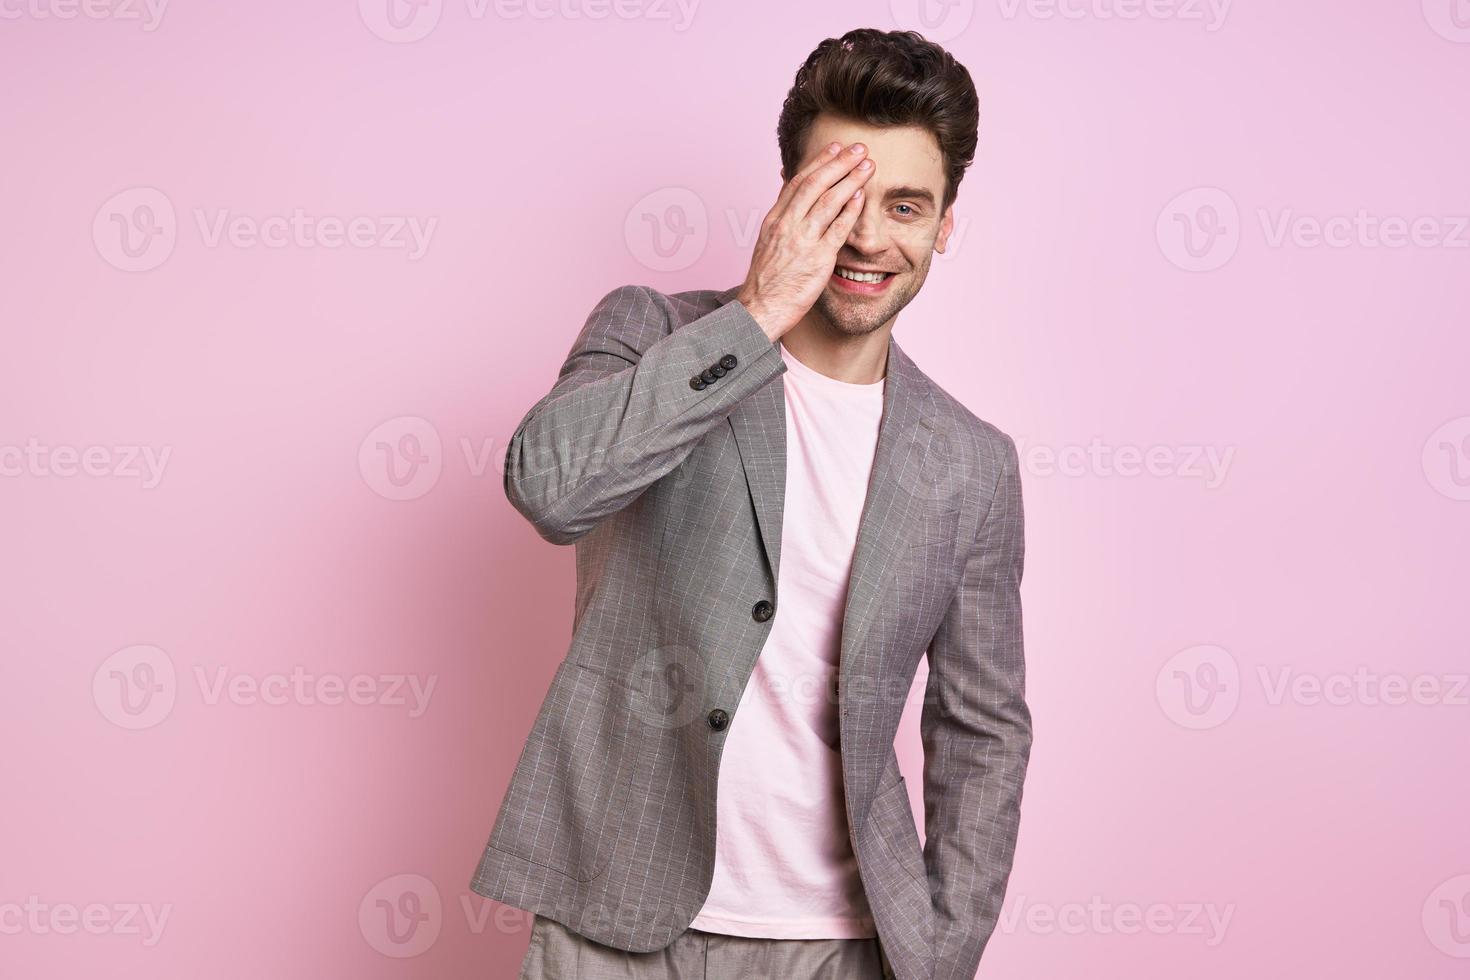 jovem bonito de terno cobrindo metade do rosto com a mão em pé contra um fundo rosa foto